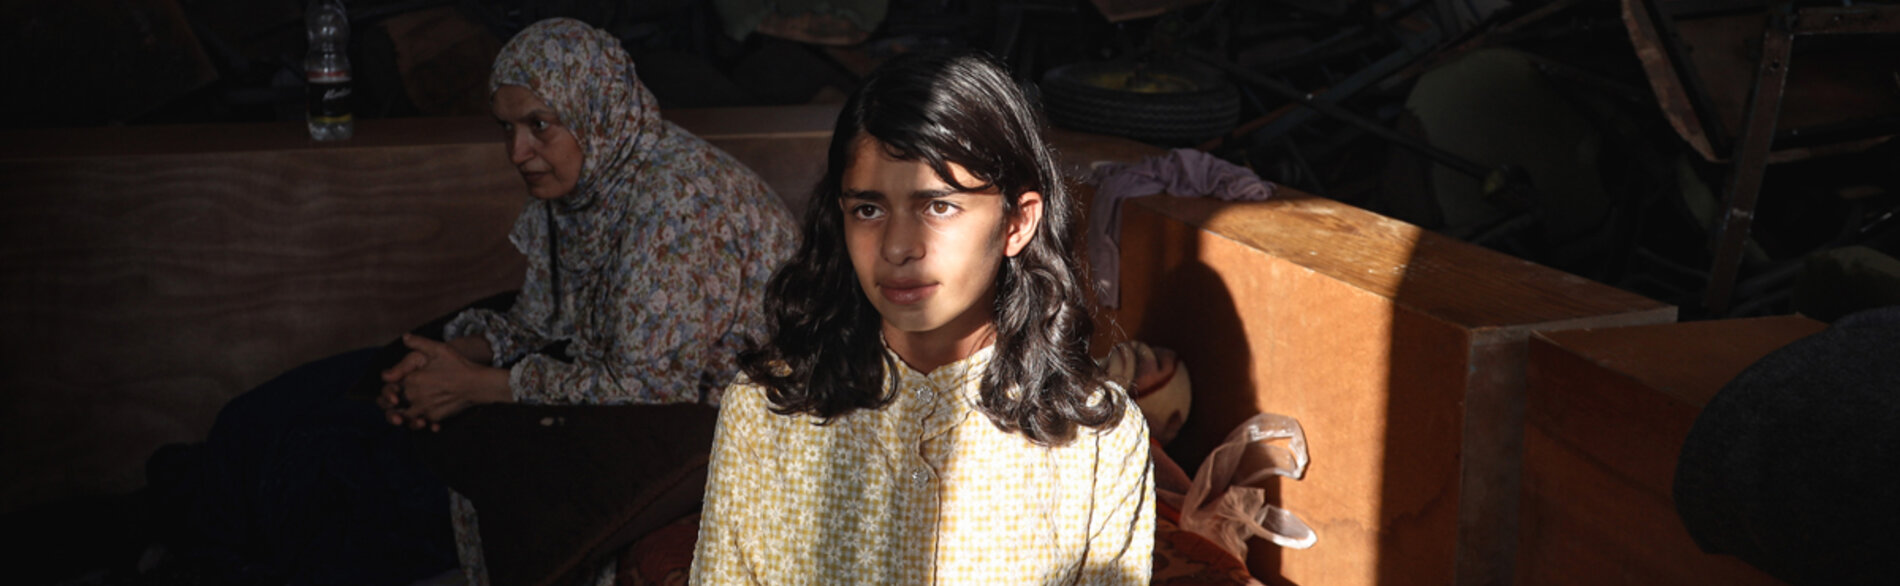 ר'זאל בת ה-14 נותרה ללא קורת גג כשבית משפחתה נהרס בתחילת אוקטובר 2023. כשהייתה בת חמש בלבד איבדה את ביתה הקודם במעשי האיבה, ונותרה עקורה למשך שנתיים. צילום: © יוניסף / אל באבא, 2 בנובמבר 2023